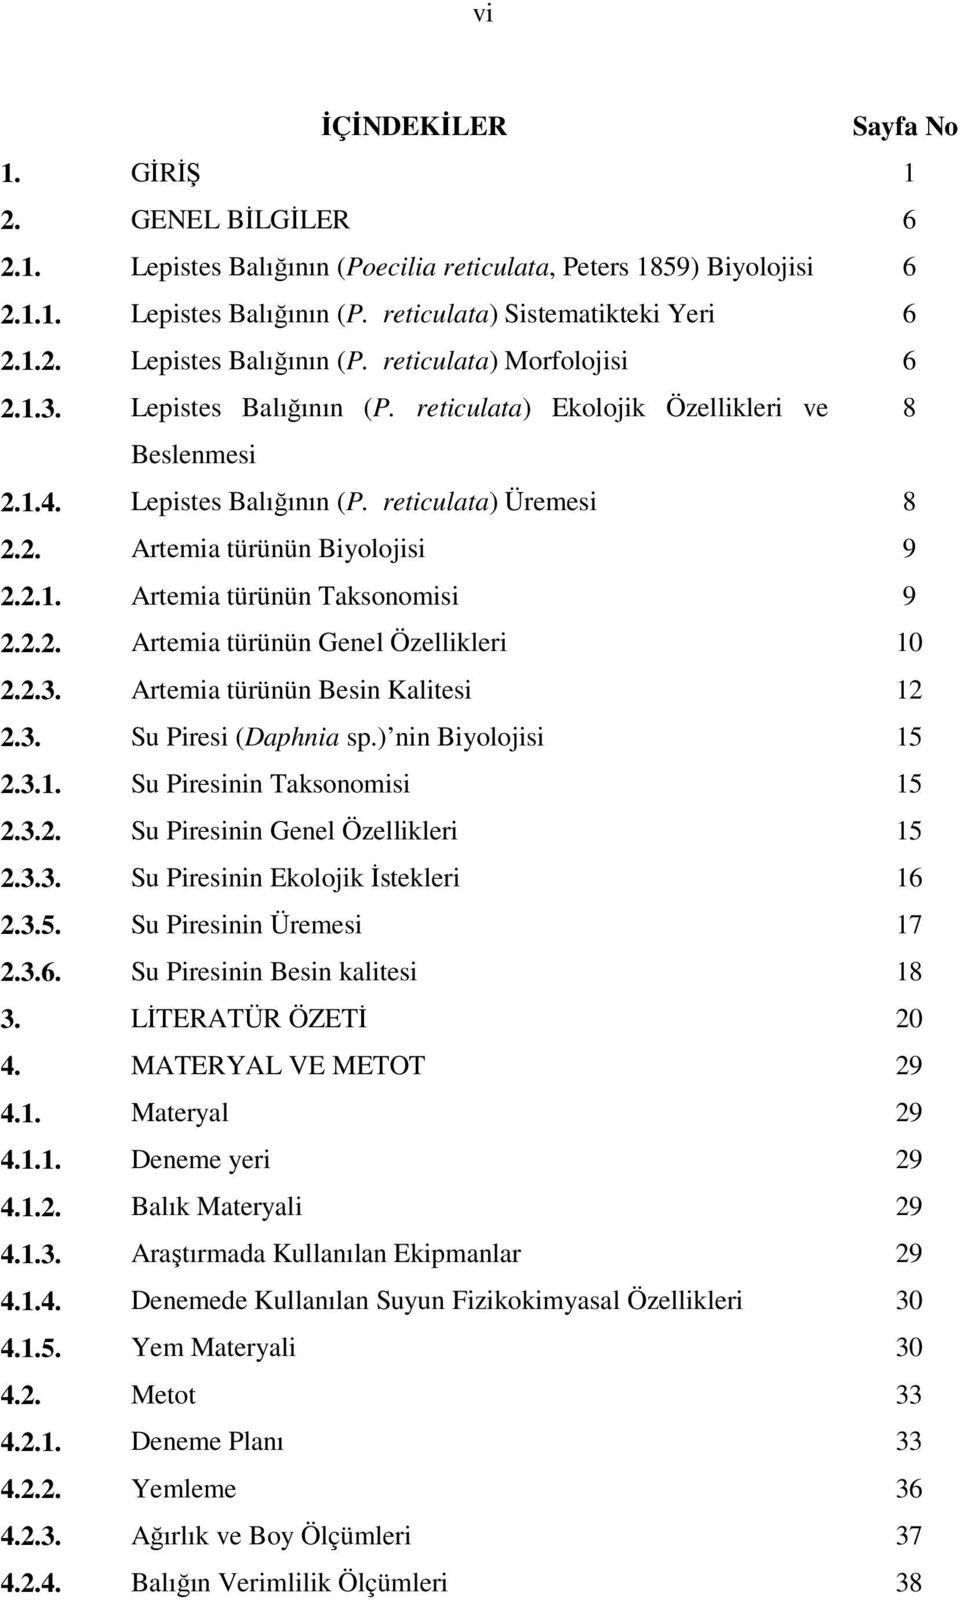 2.2. Artemia türünün Genel Özellikleri 10 2.2.3. Artemia türünün Besin Kalitesi 12 2.3. Su Piresi (Daphnia sp.) nin Biyolojisi 15 2.3.1. Su Piresinin Taksonomisi 15 2.3.2. Su Piresinin Genel Özellikleri 15 2.